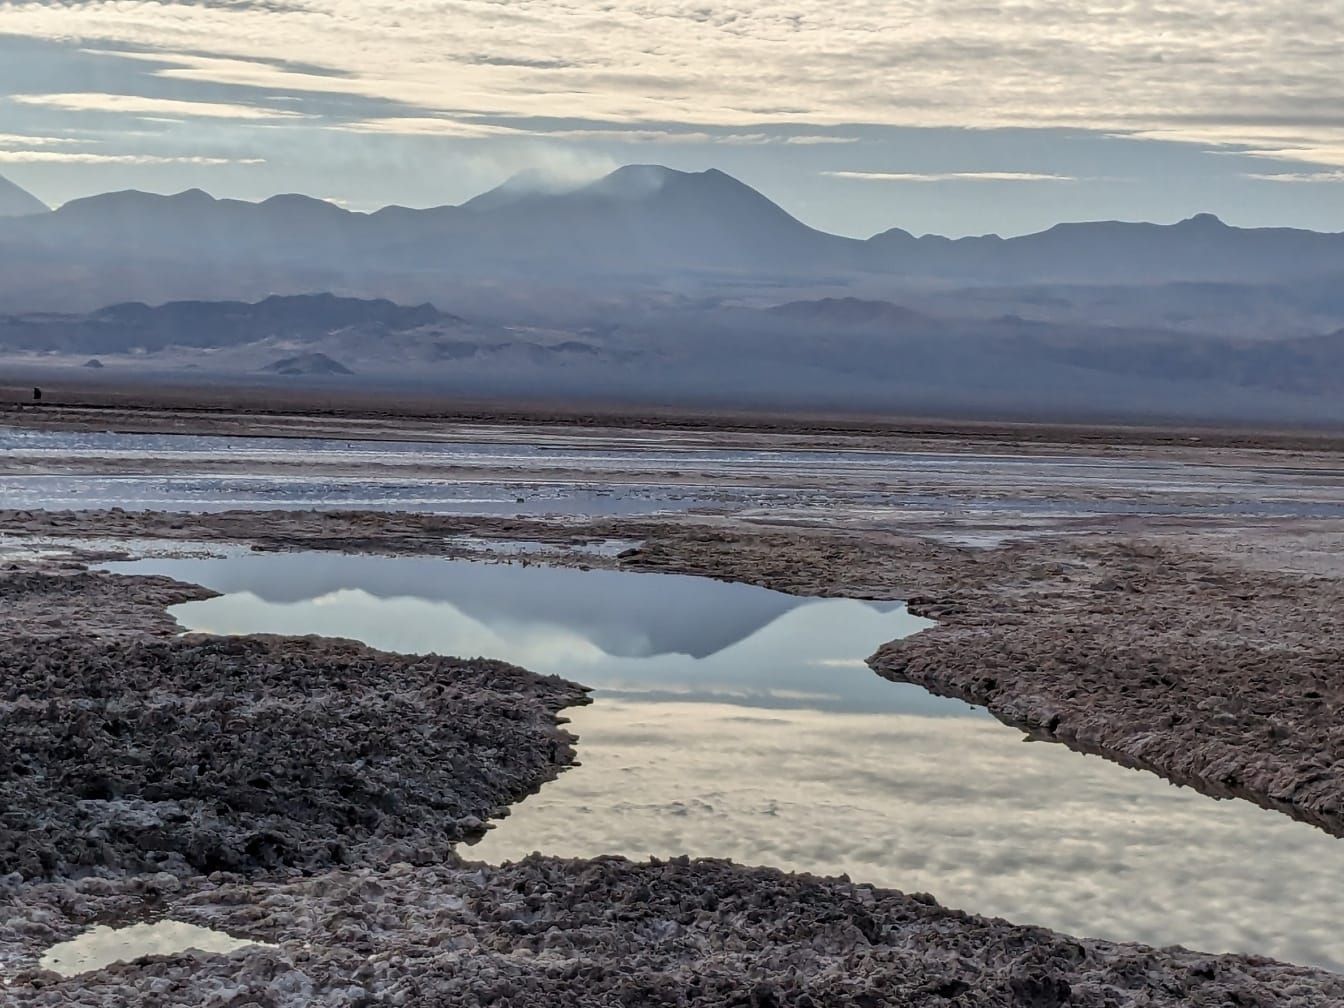 Αλμυρή λακκούβα σε μια αλμυρή λίμνη μεγάλου υψομέτρου στην έρημο στη Νότια Αμερική